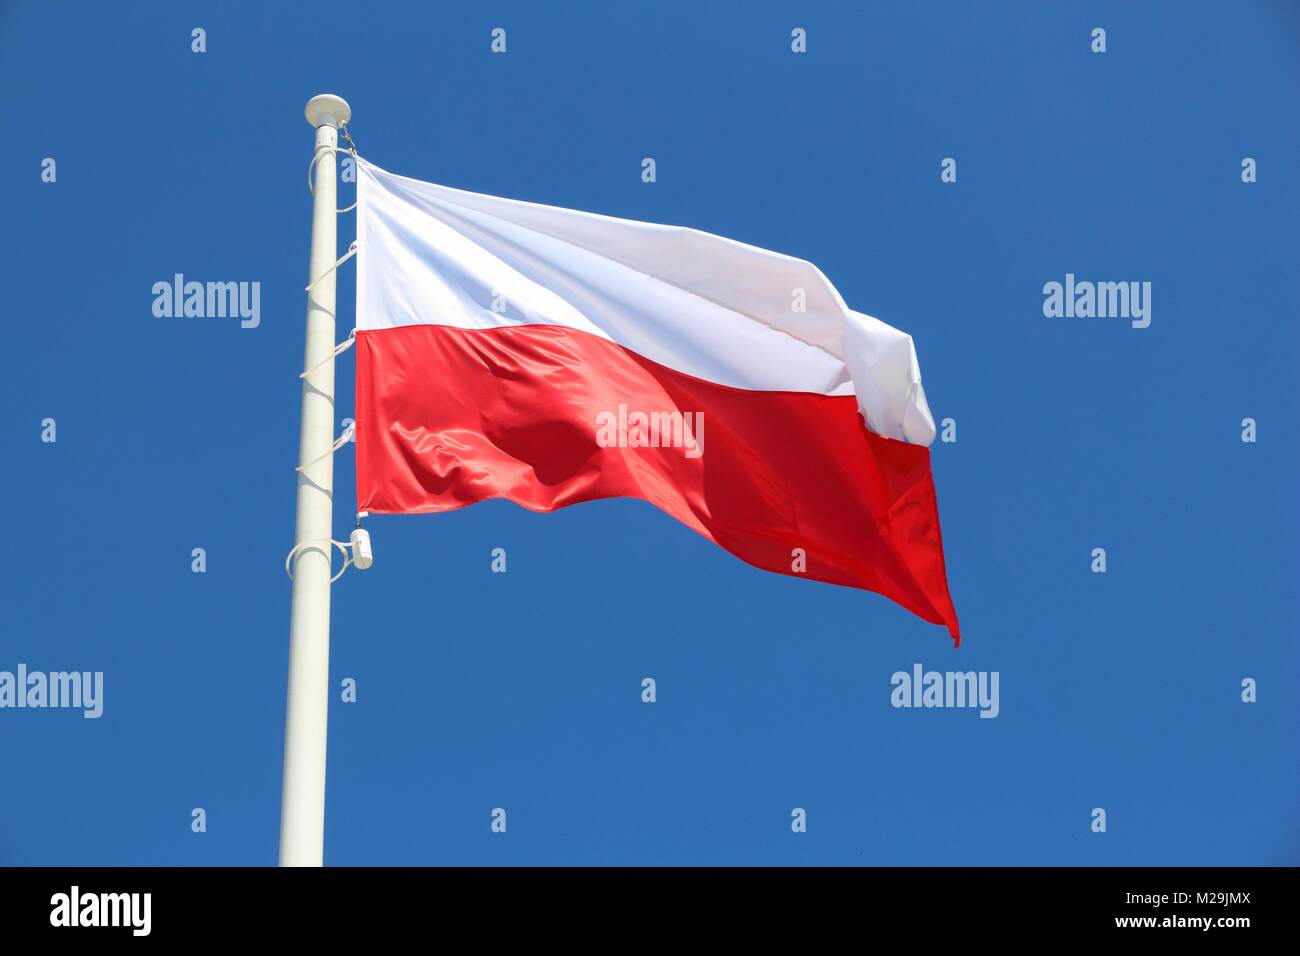 Drapeau polonais - couleurs nationales de la Pologne sur un mât. Banque D'Images